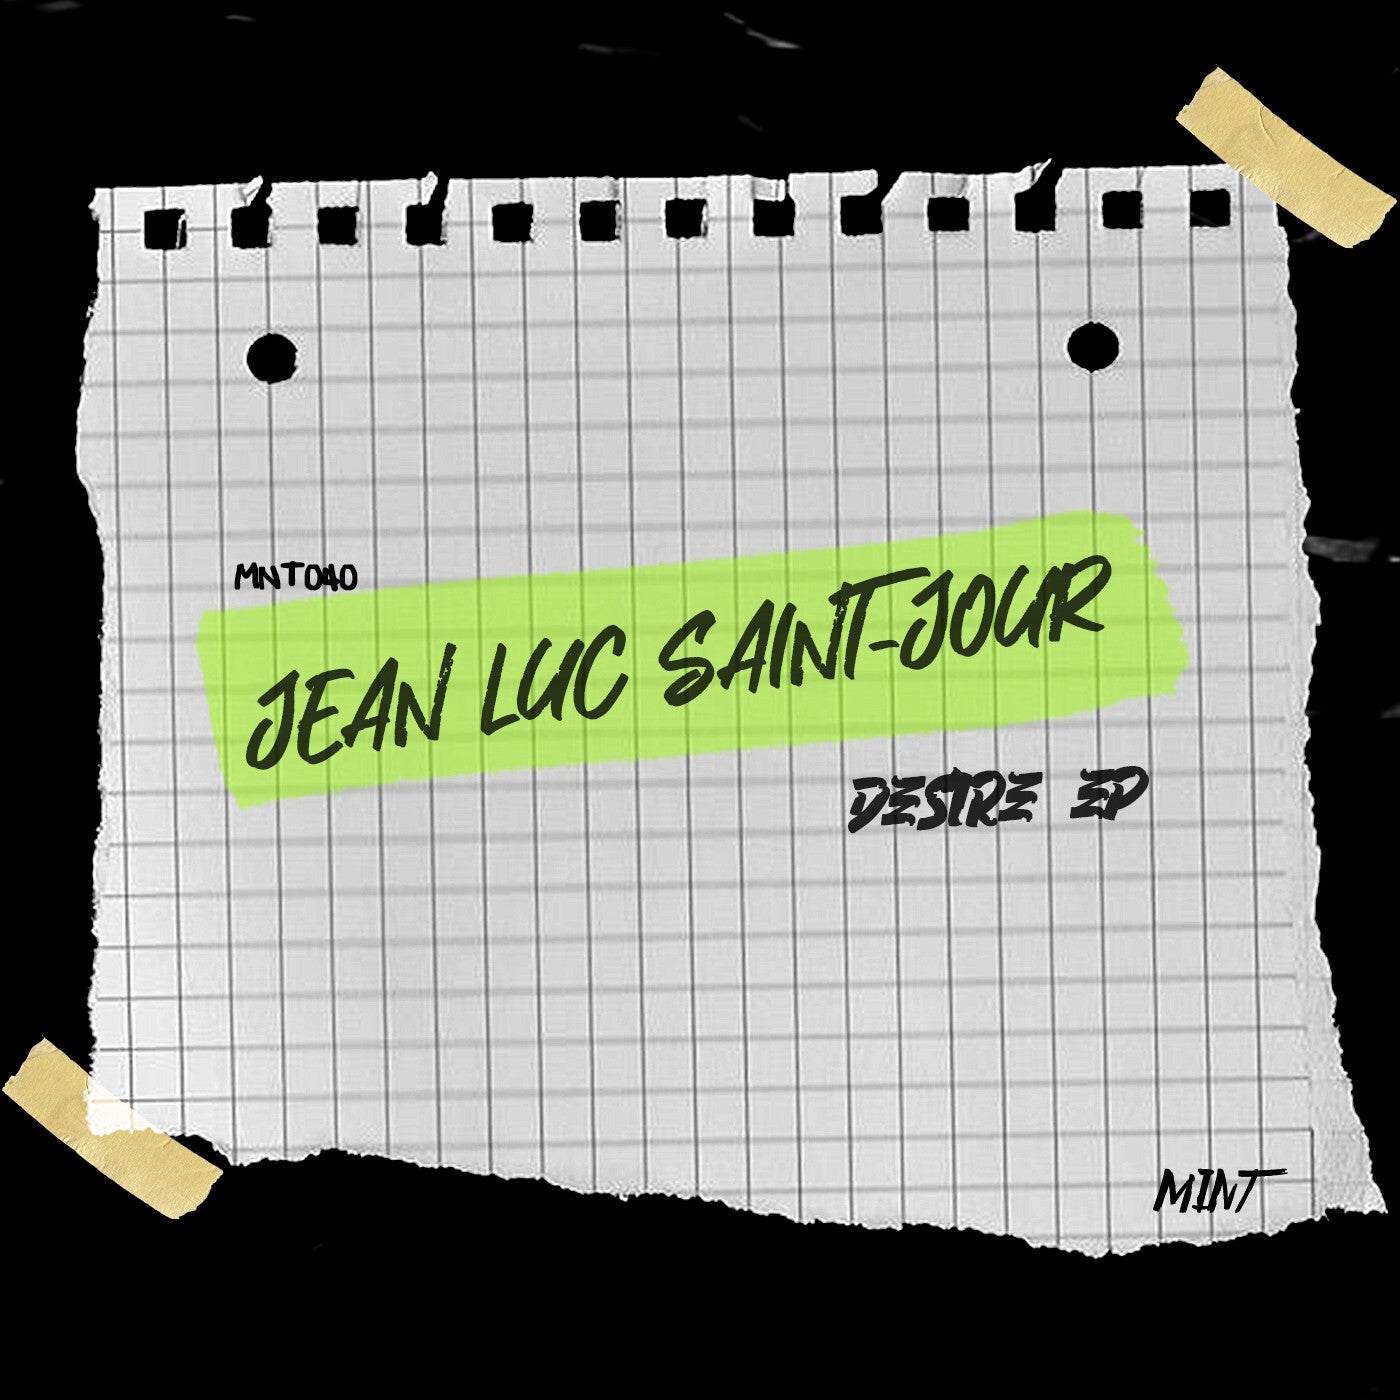 Jean Luc Saint-Jour – Desire EP [MNT040]